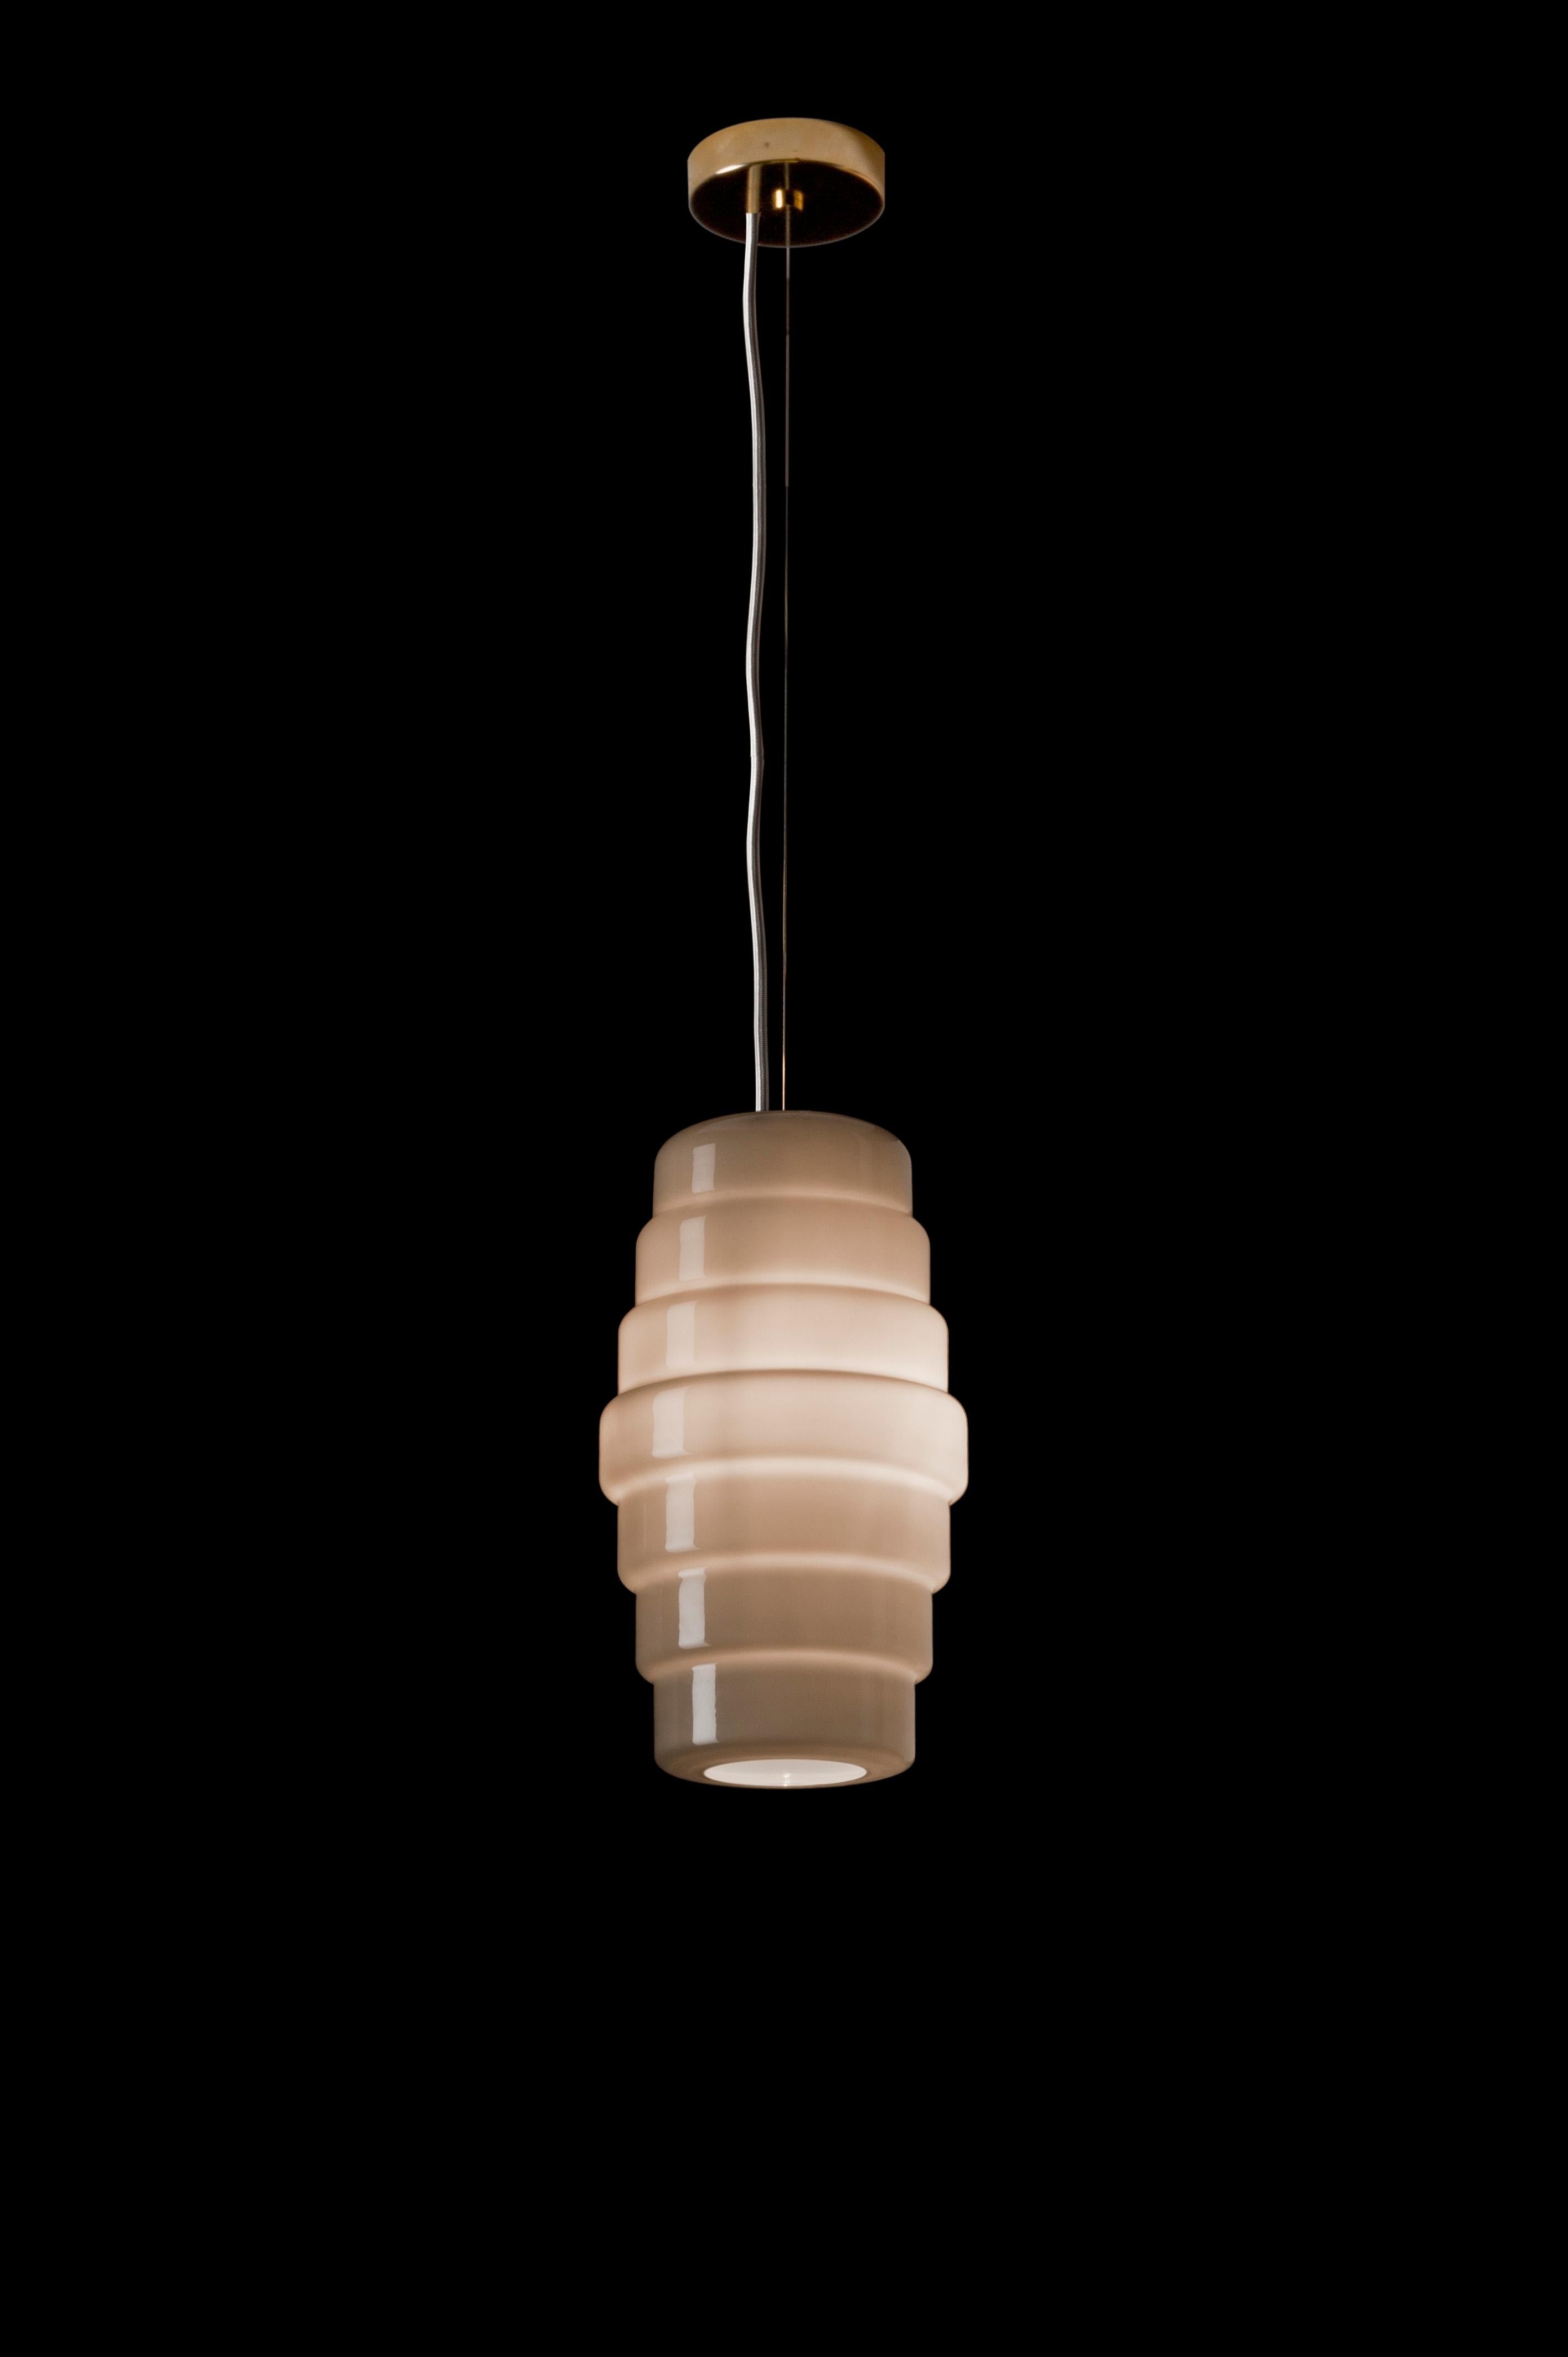 La lampe suspendue Zoe, conçue par Doriana et Massimiliano Fuksas et fabriquée par Venini, présente une forme de lanterne. Disponible en deux tailles différentes. Utilisation intérieure uniquement.

Dimensions : Ø 30 cm, H 52,5 cm.